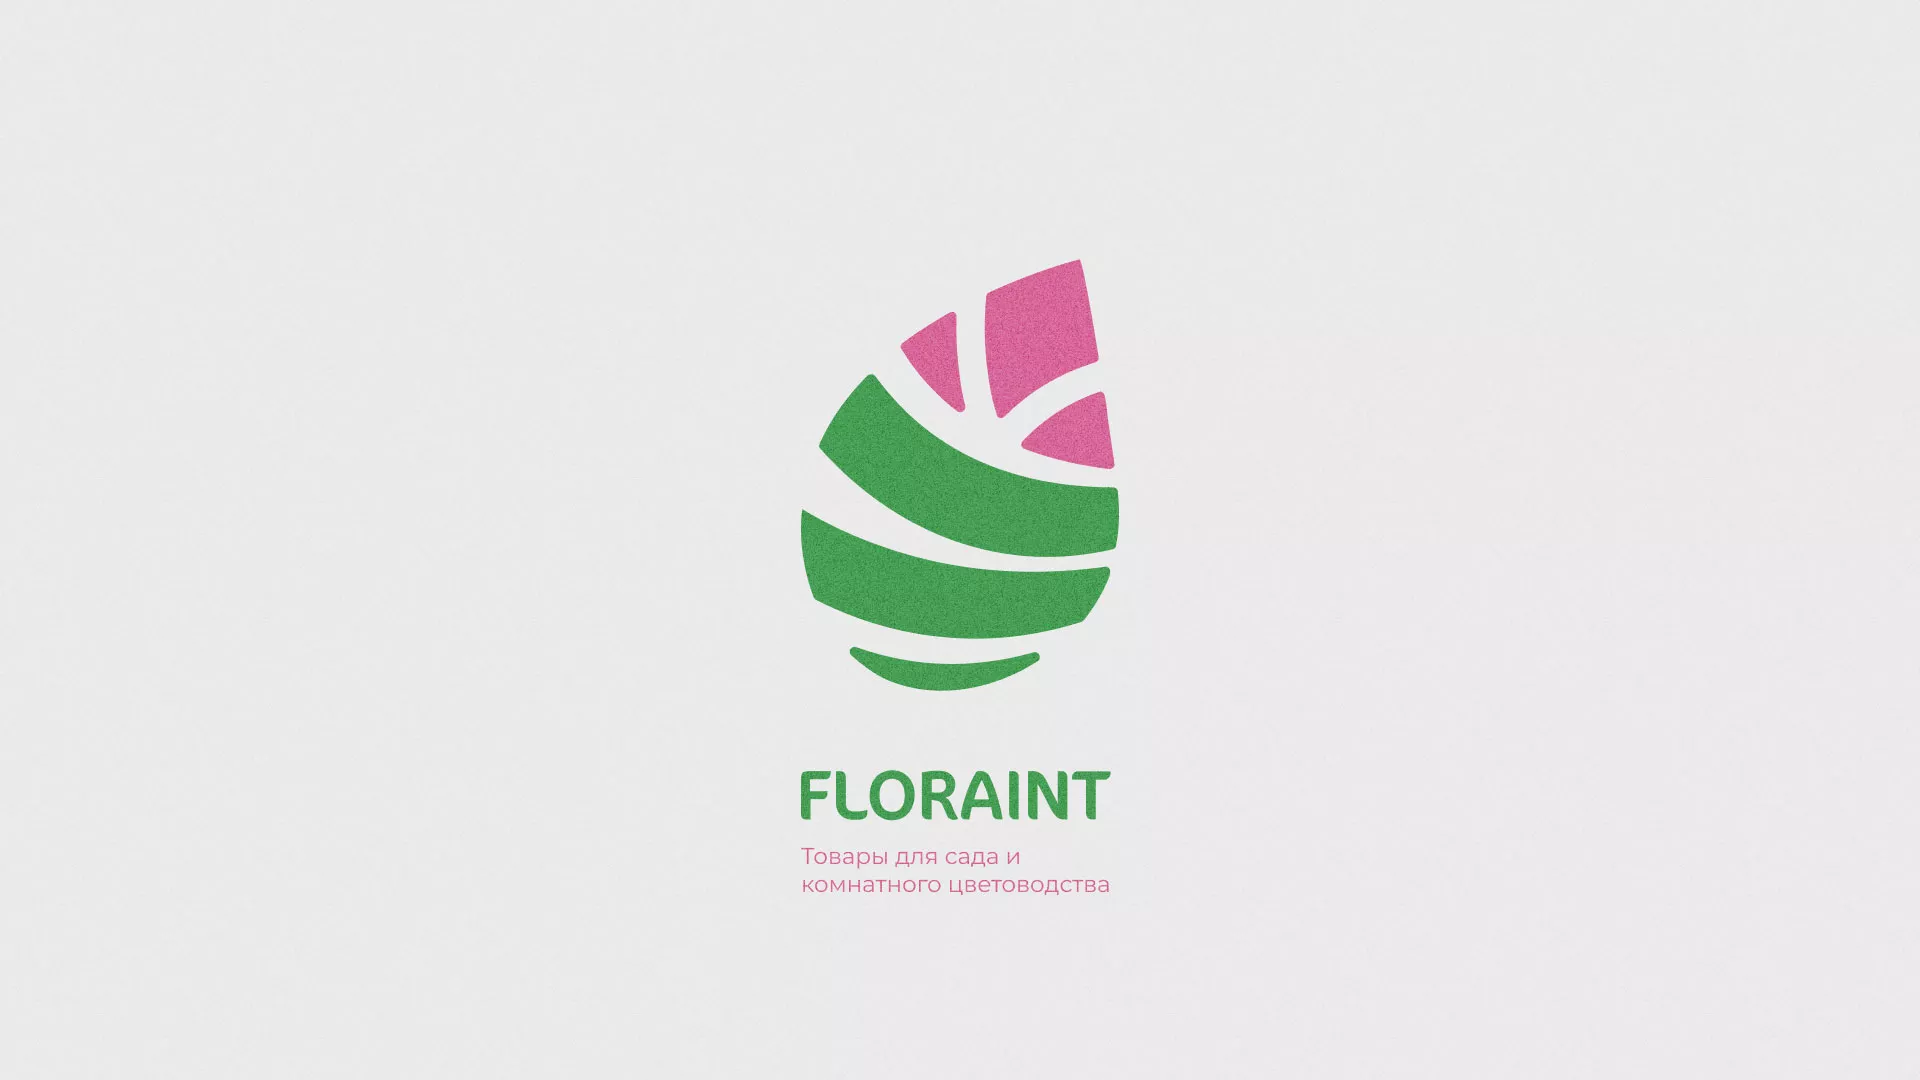 Разработка оформления профиля Instagram для магазина «Floraint» в Ярцево